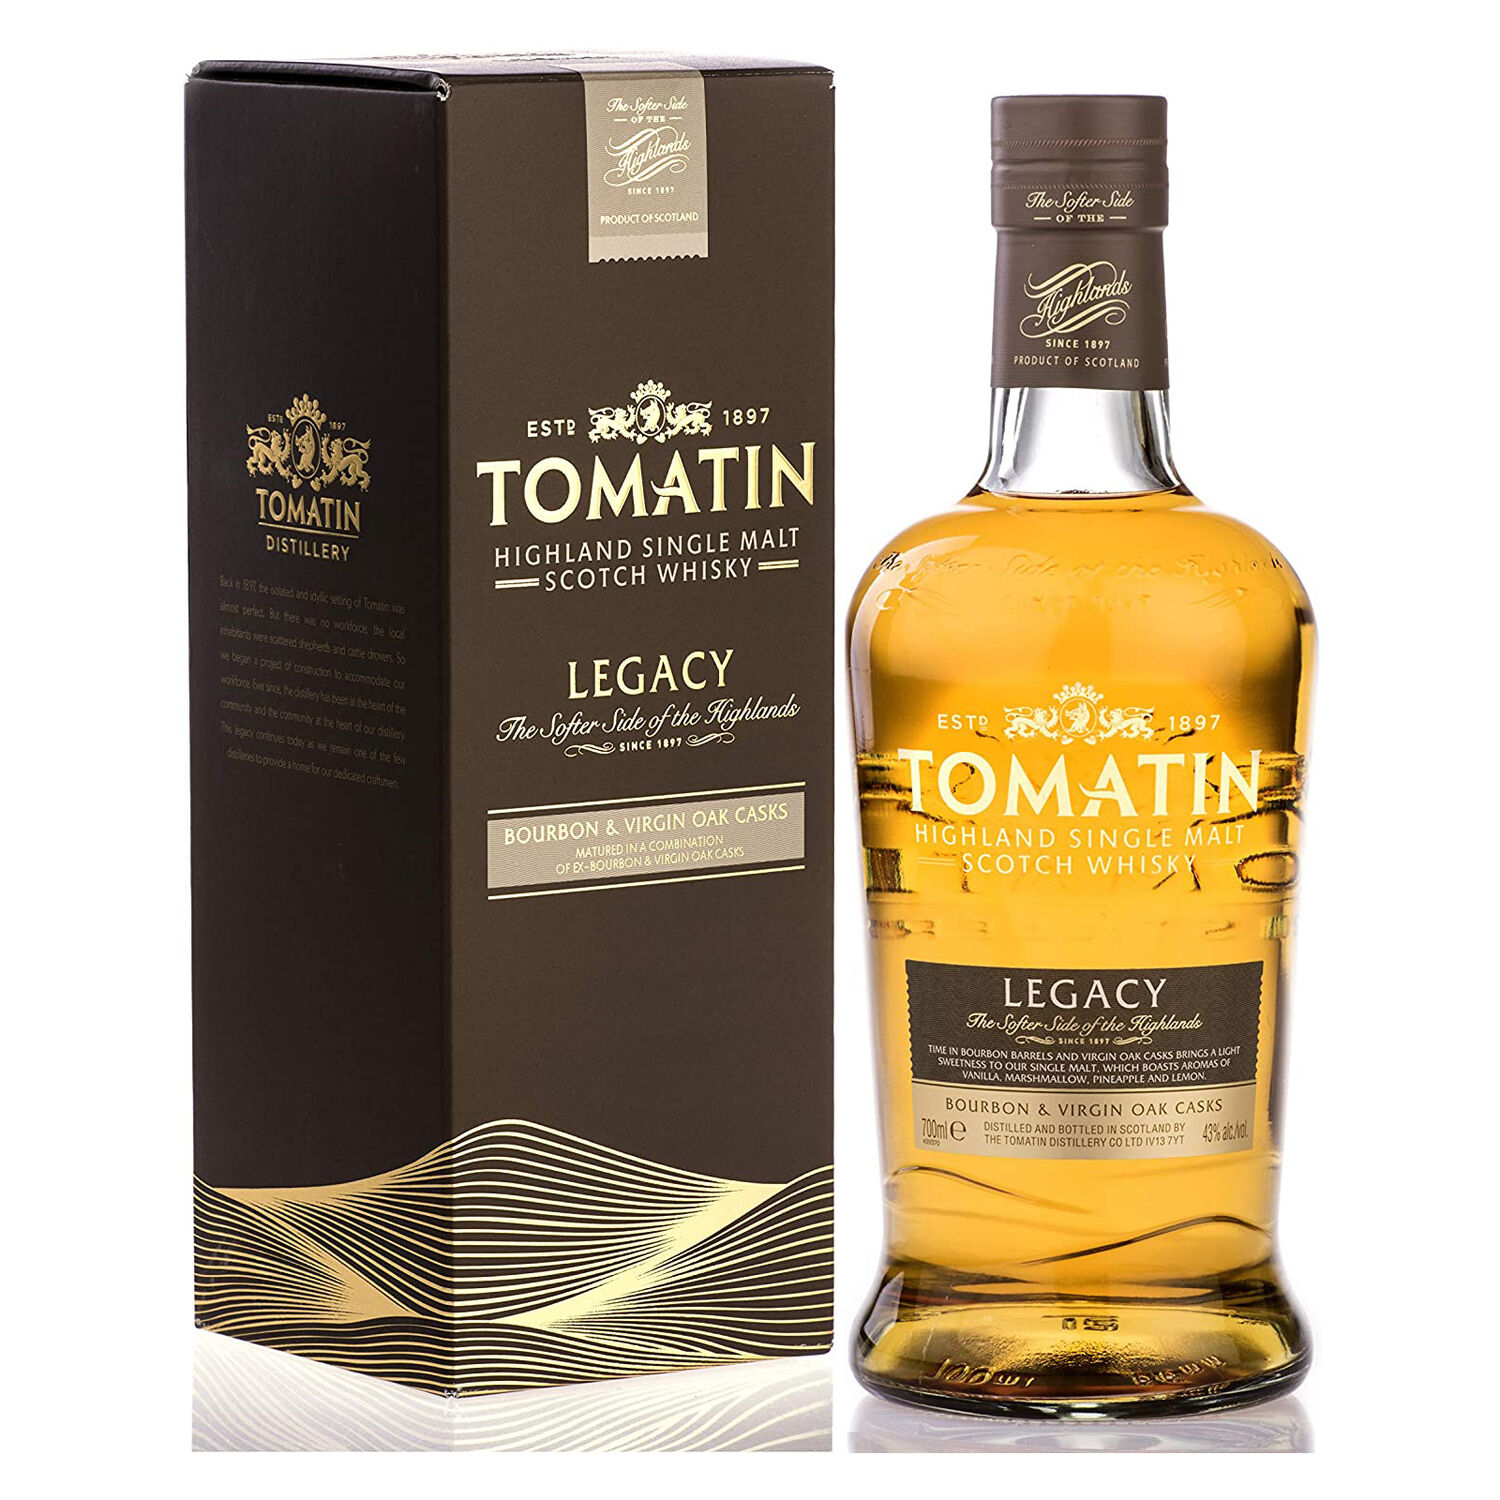 Highland Malt Tomatin Single (70cl) Whisky only Scotch Legacy